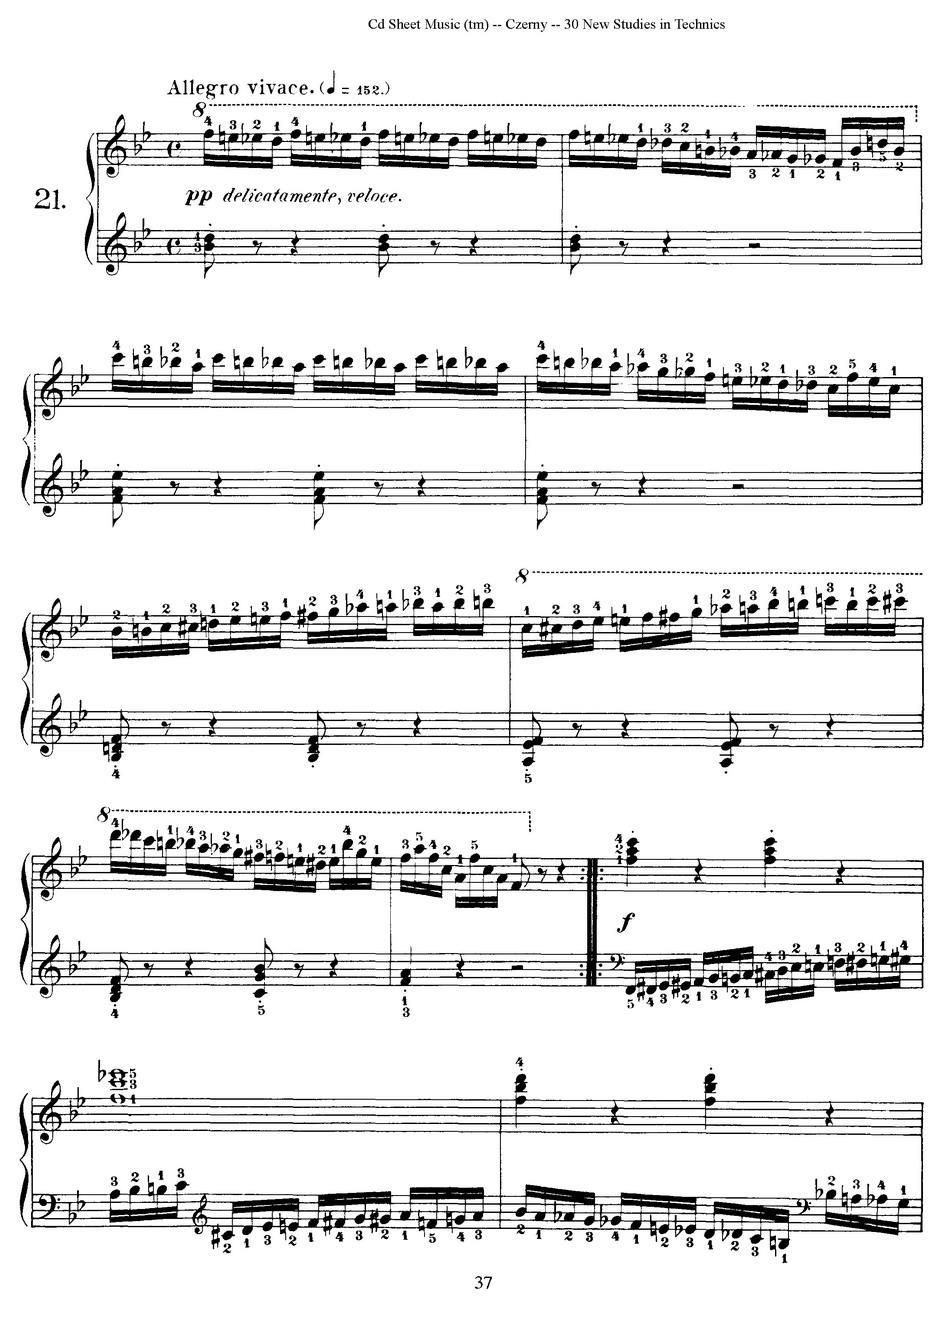 Czerny - 30 New Studies - 21（车尔尼Op849 - 30首练习曲）(1).jpg